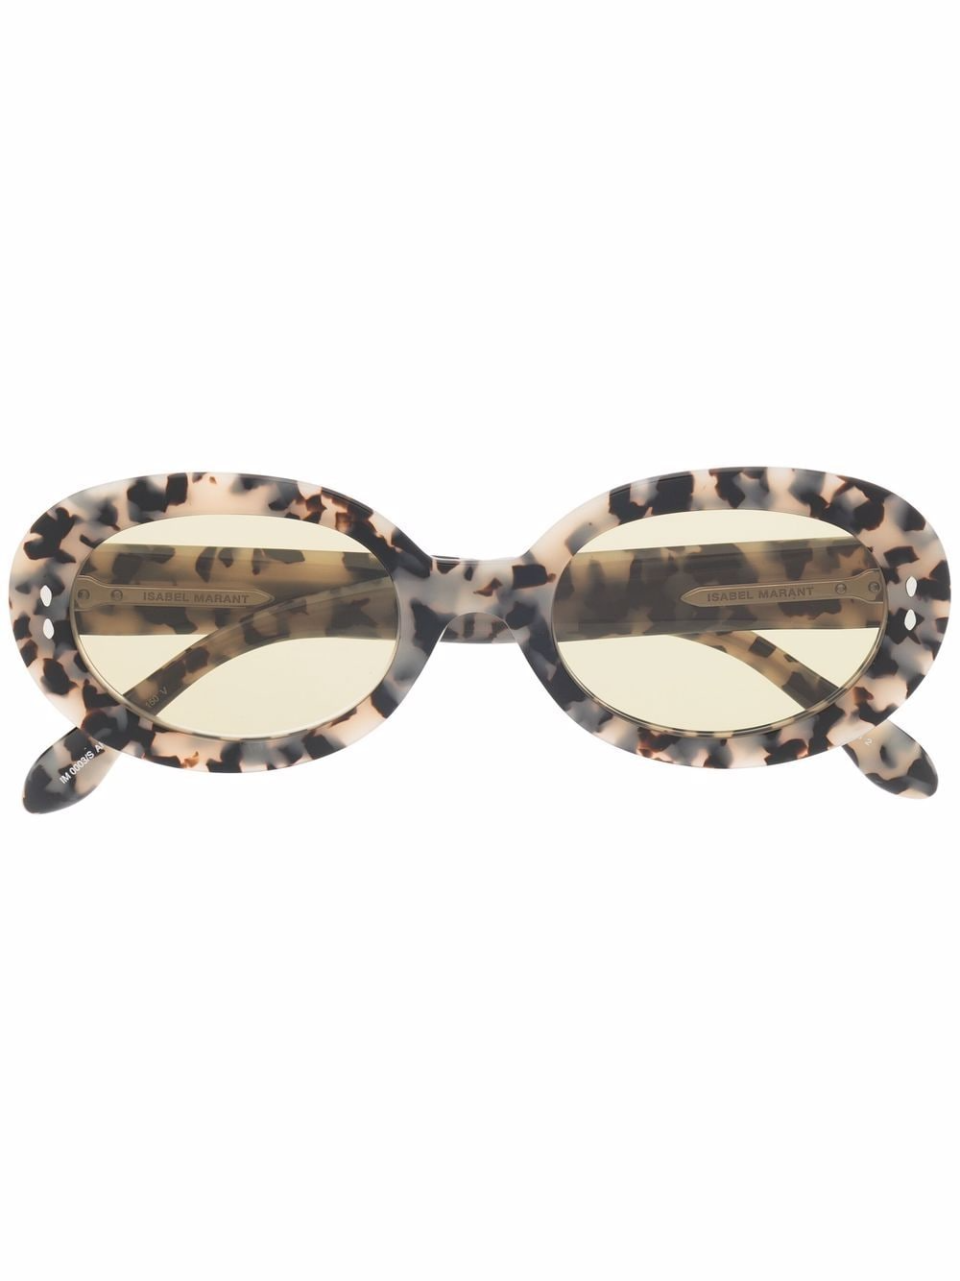 Isabel Marant Eyewear Round Tortoiseshell Sunglasses